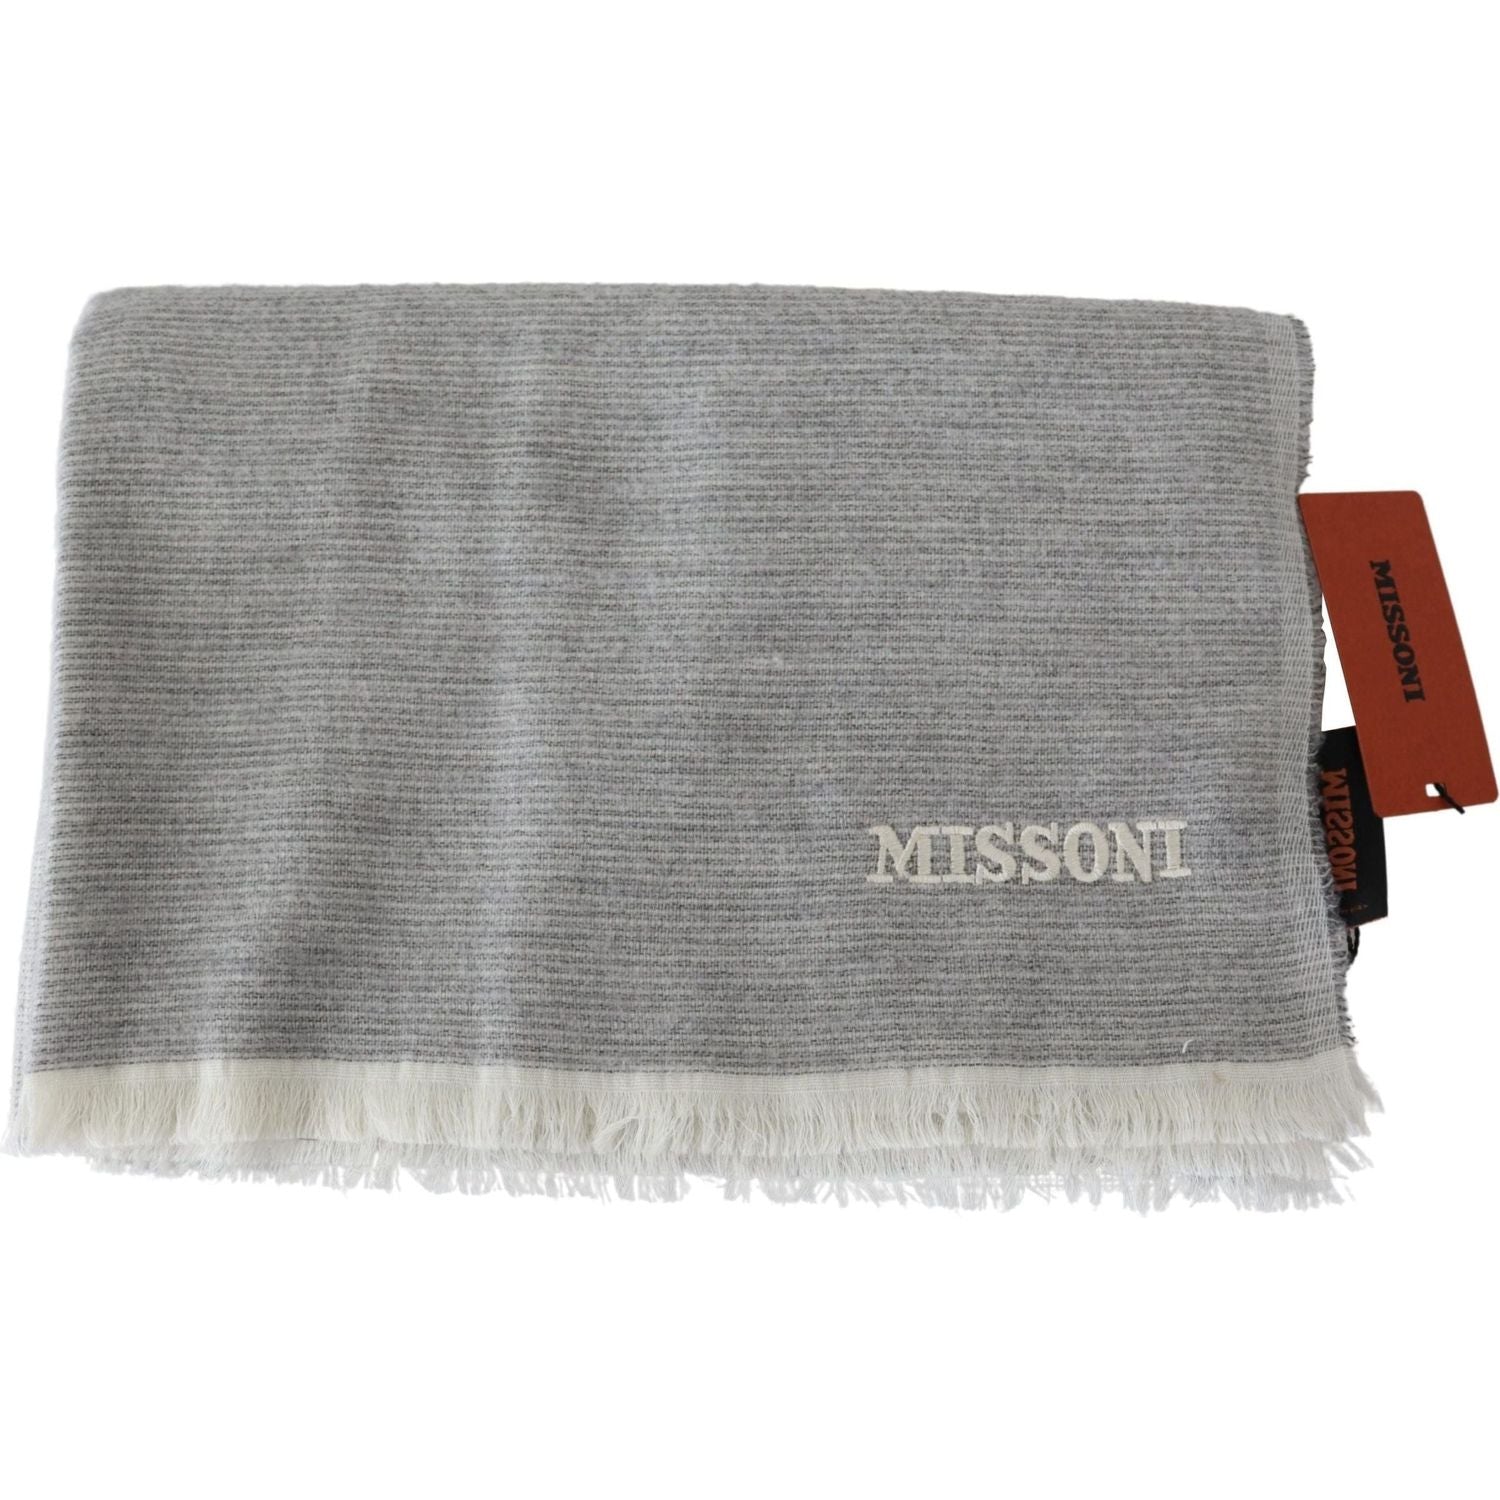 Missoni | Beige 100% Wool Unisex Neck Wrap Scarf  | McRichard Designer Brands